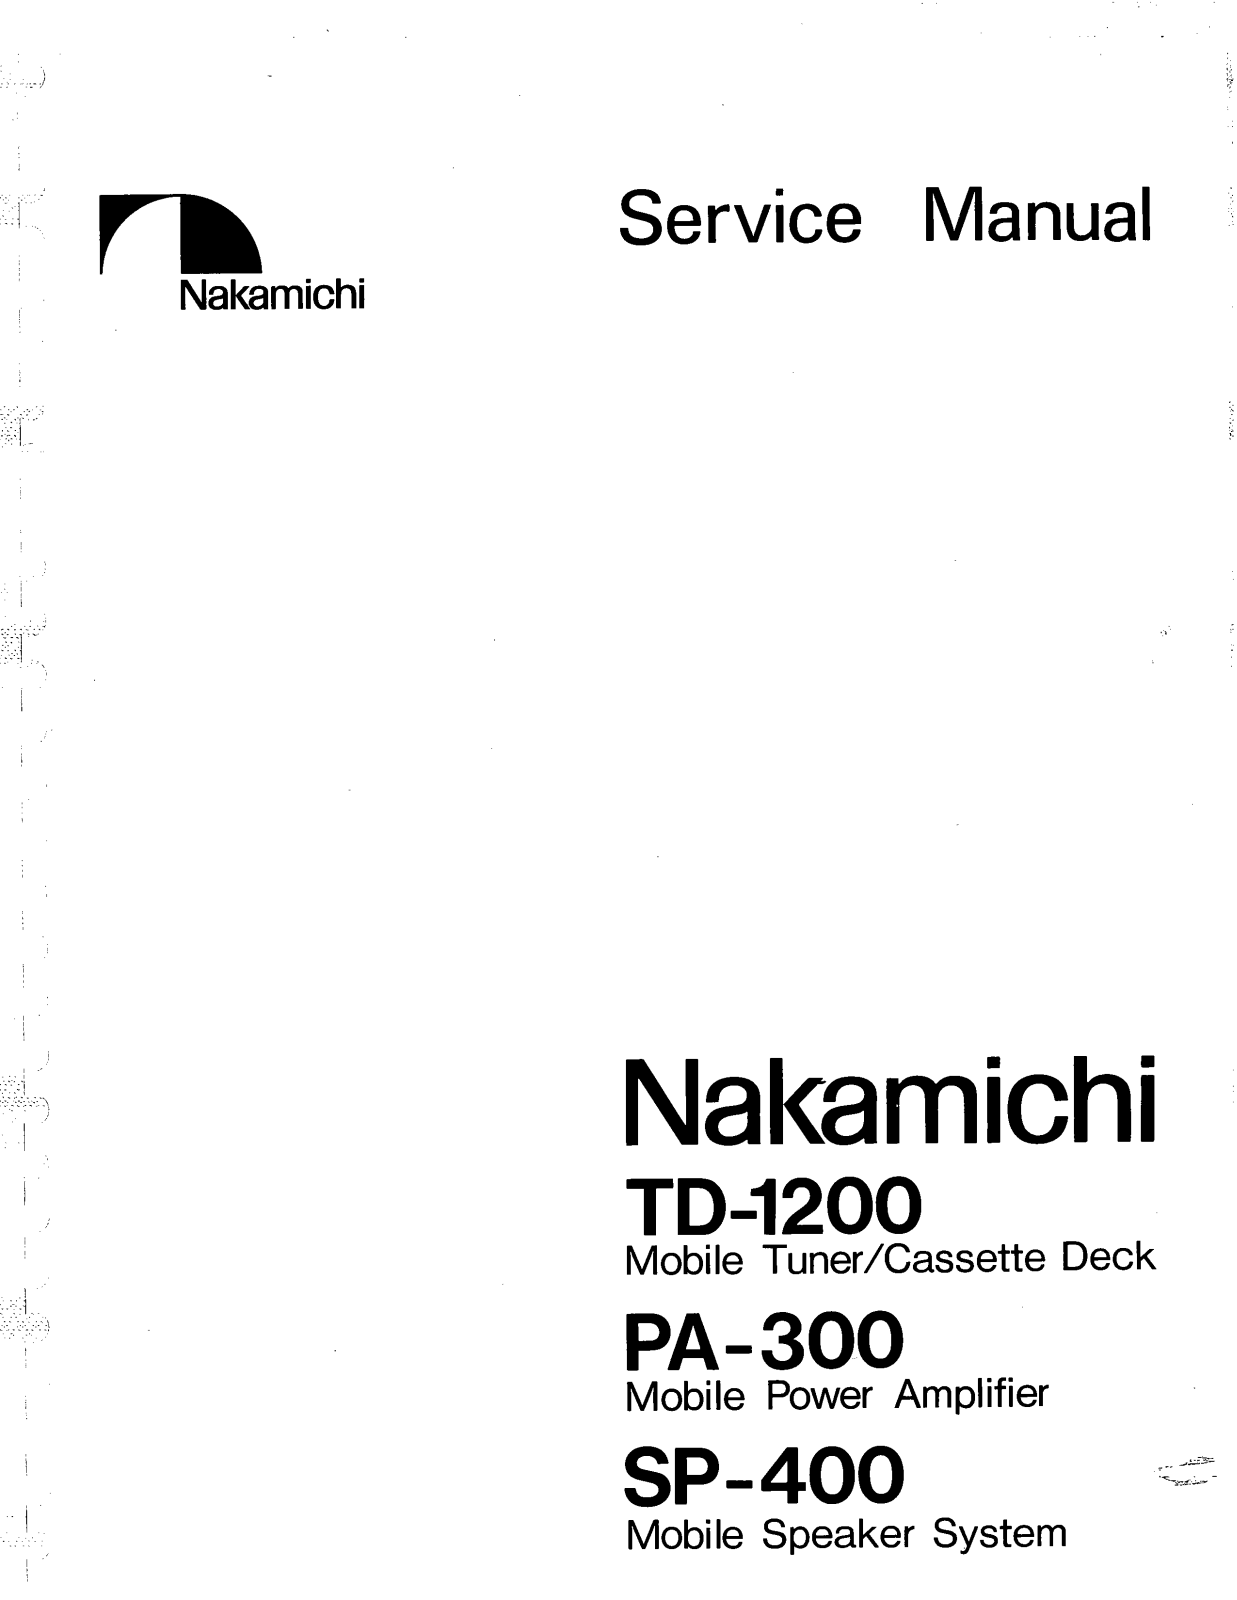 Nakamichi TD-1200 Service manual